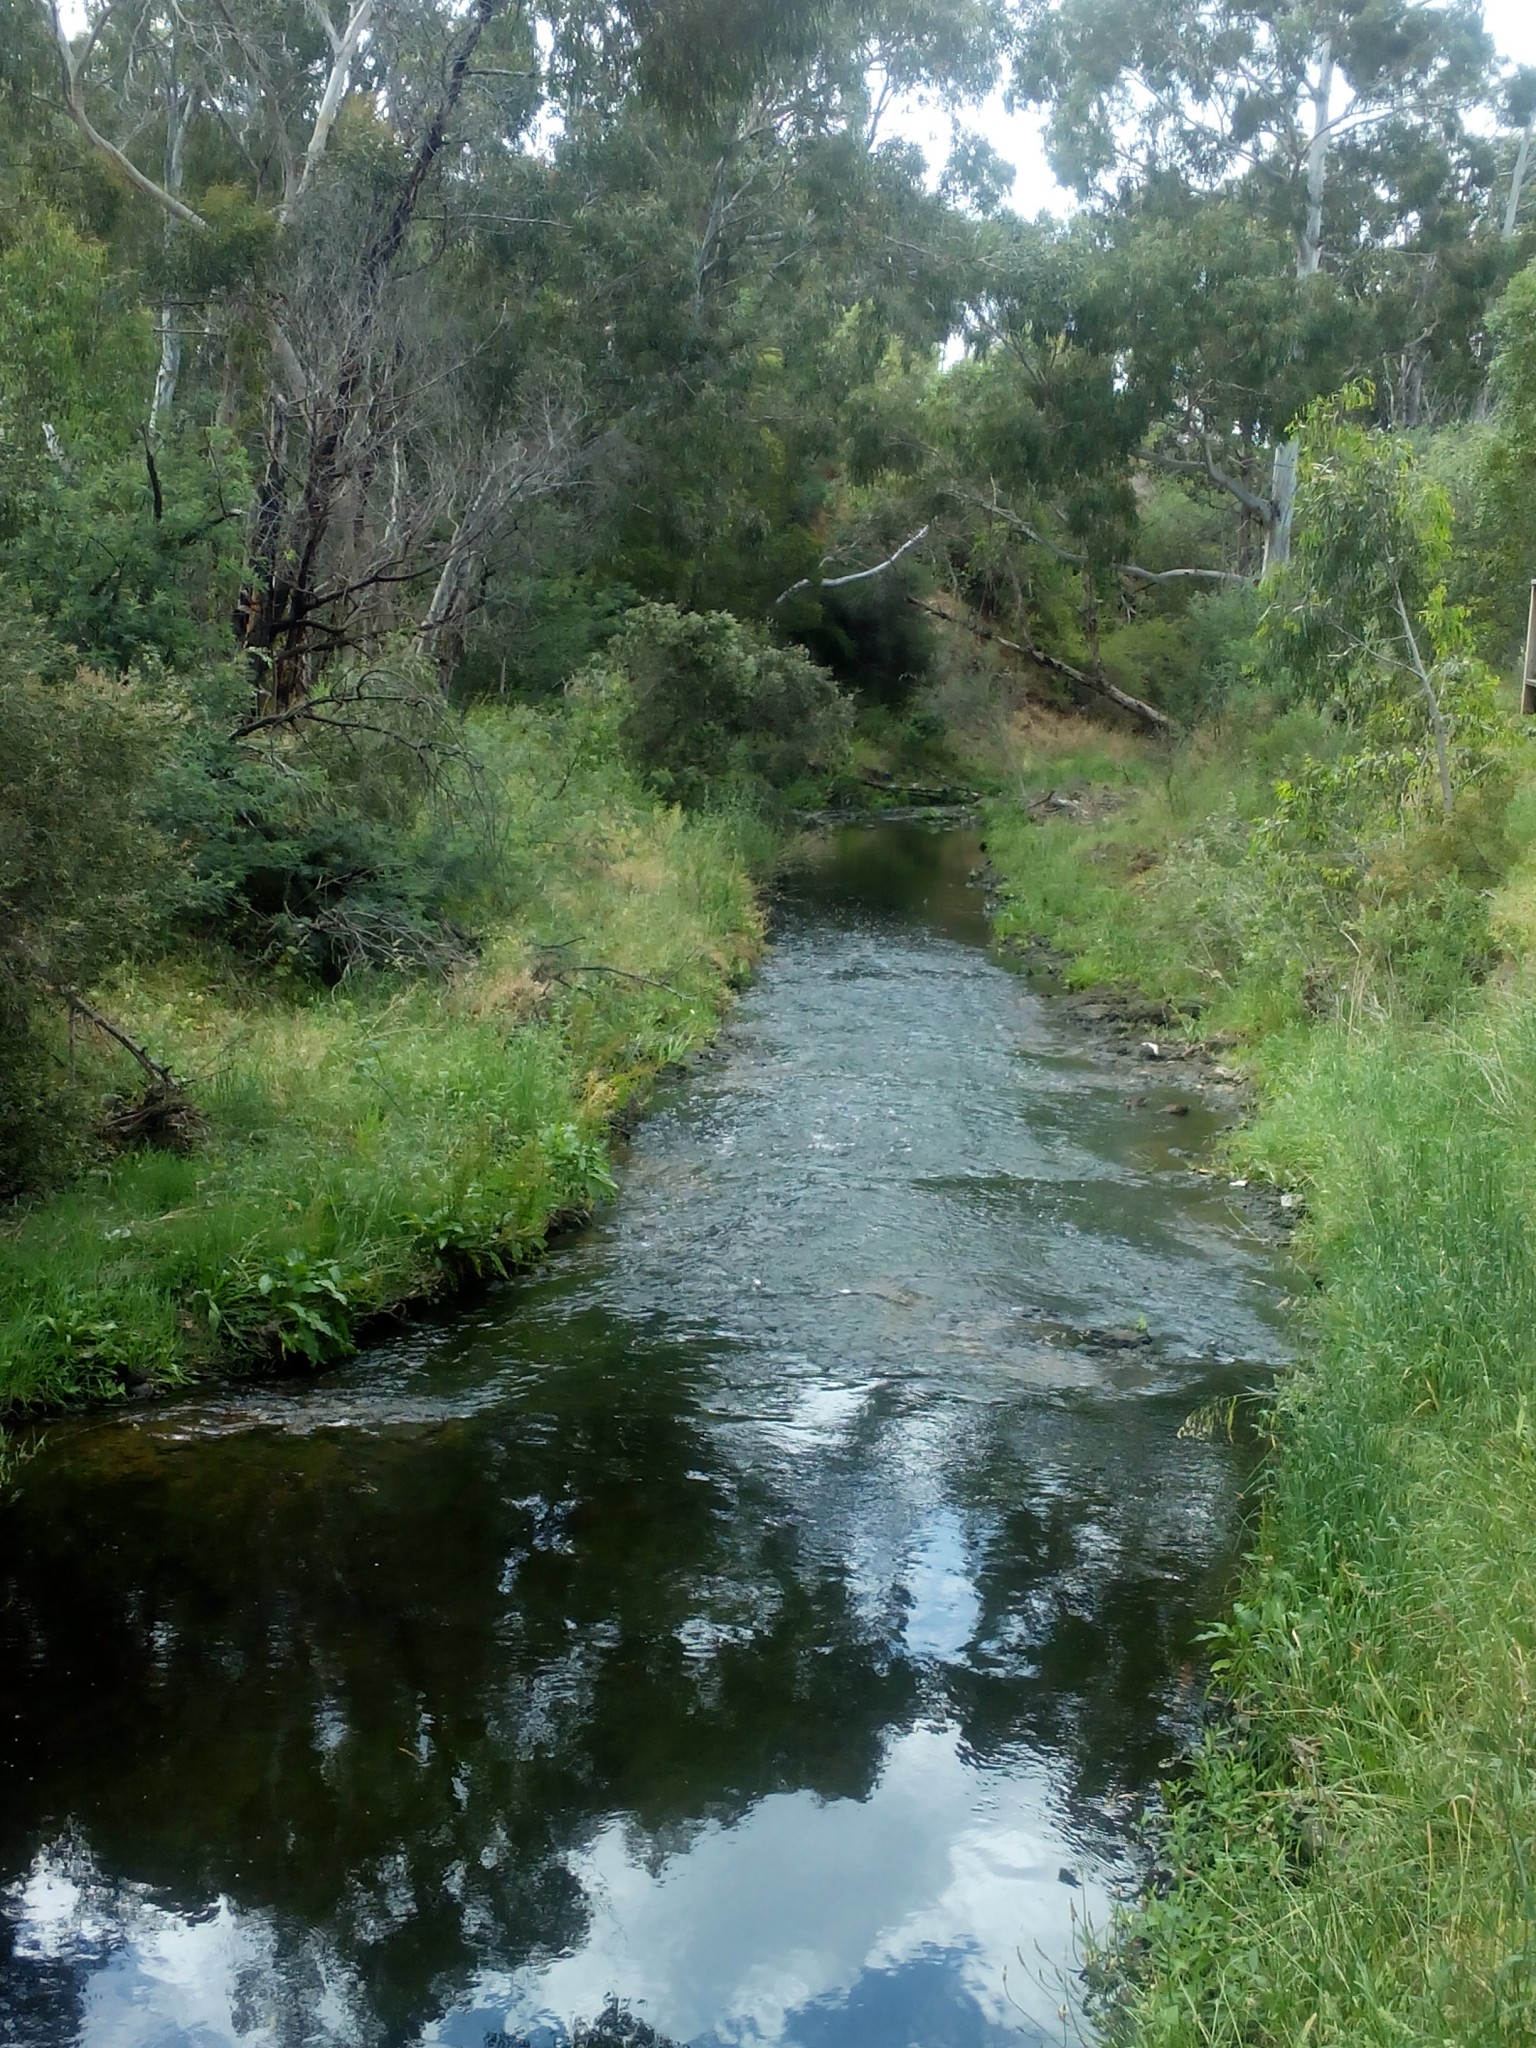 Darebyn Creek